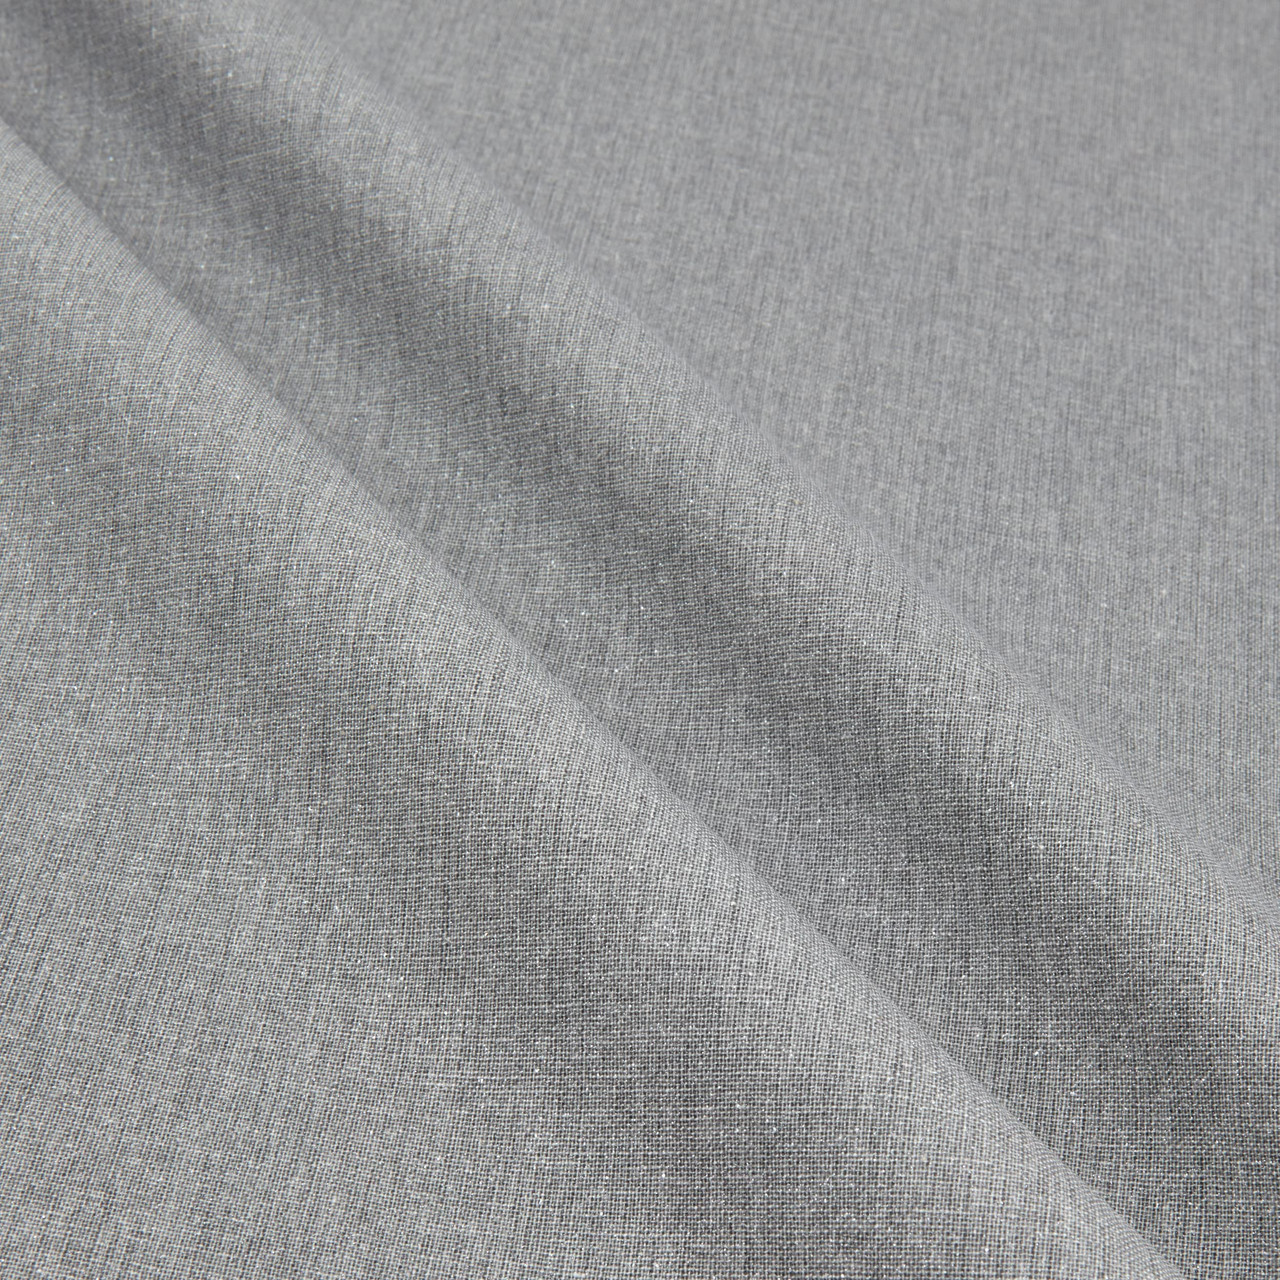 Mook Fabrics Quilted Heat-Tex 070219, Silver/Grey, 12 Yard Bolt